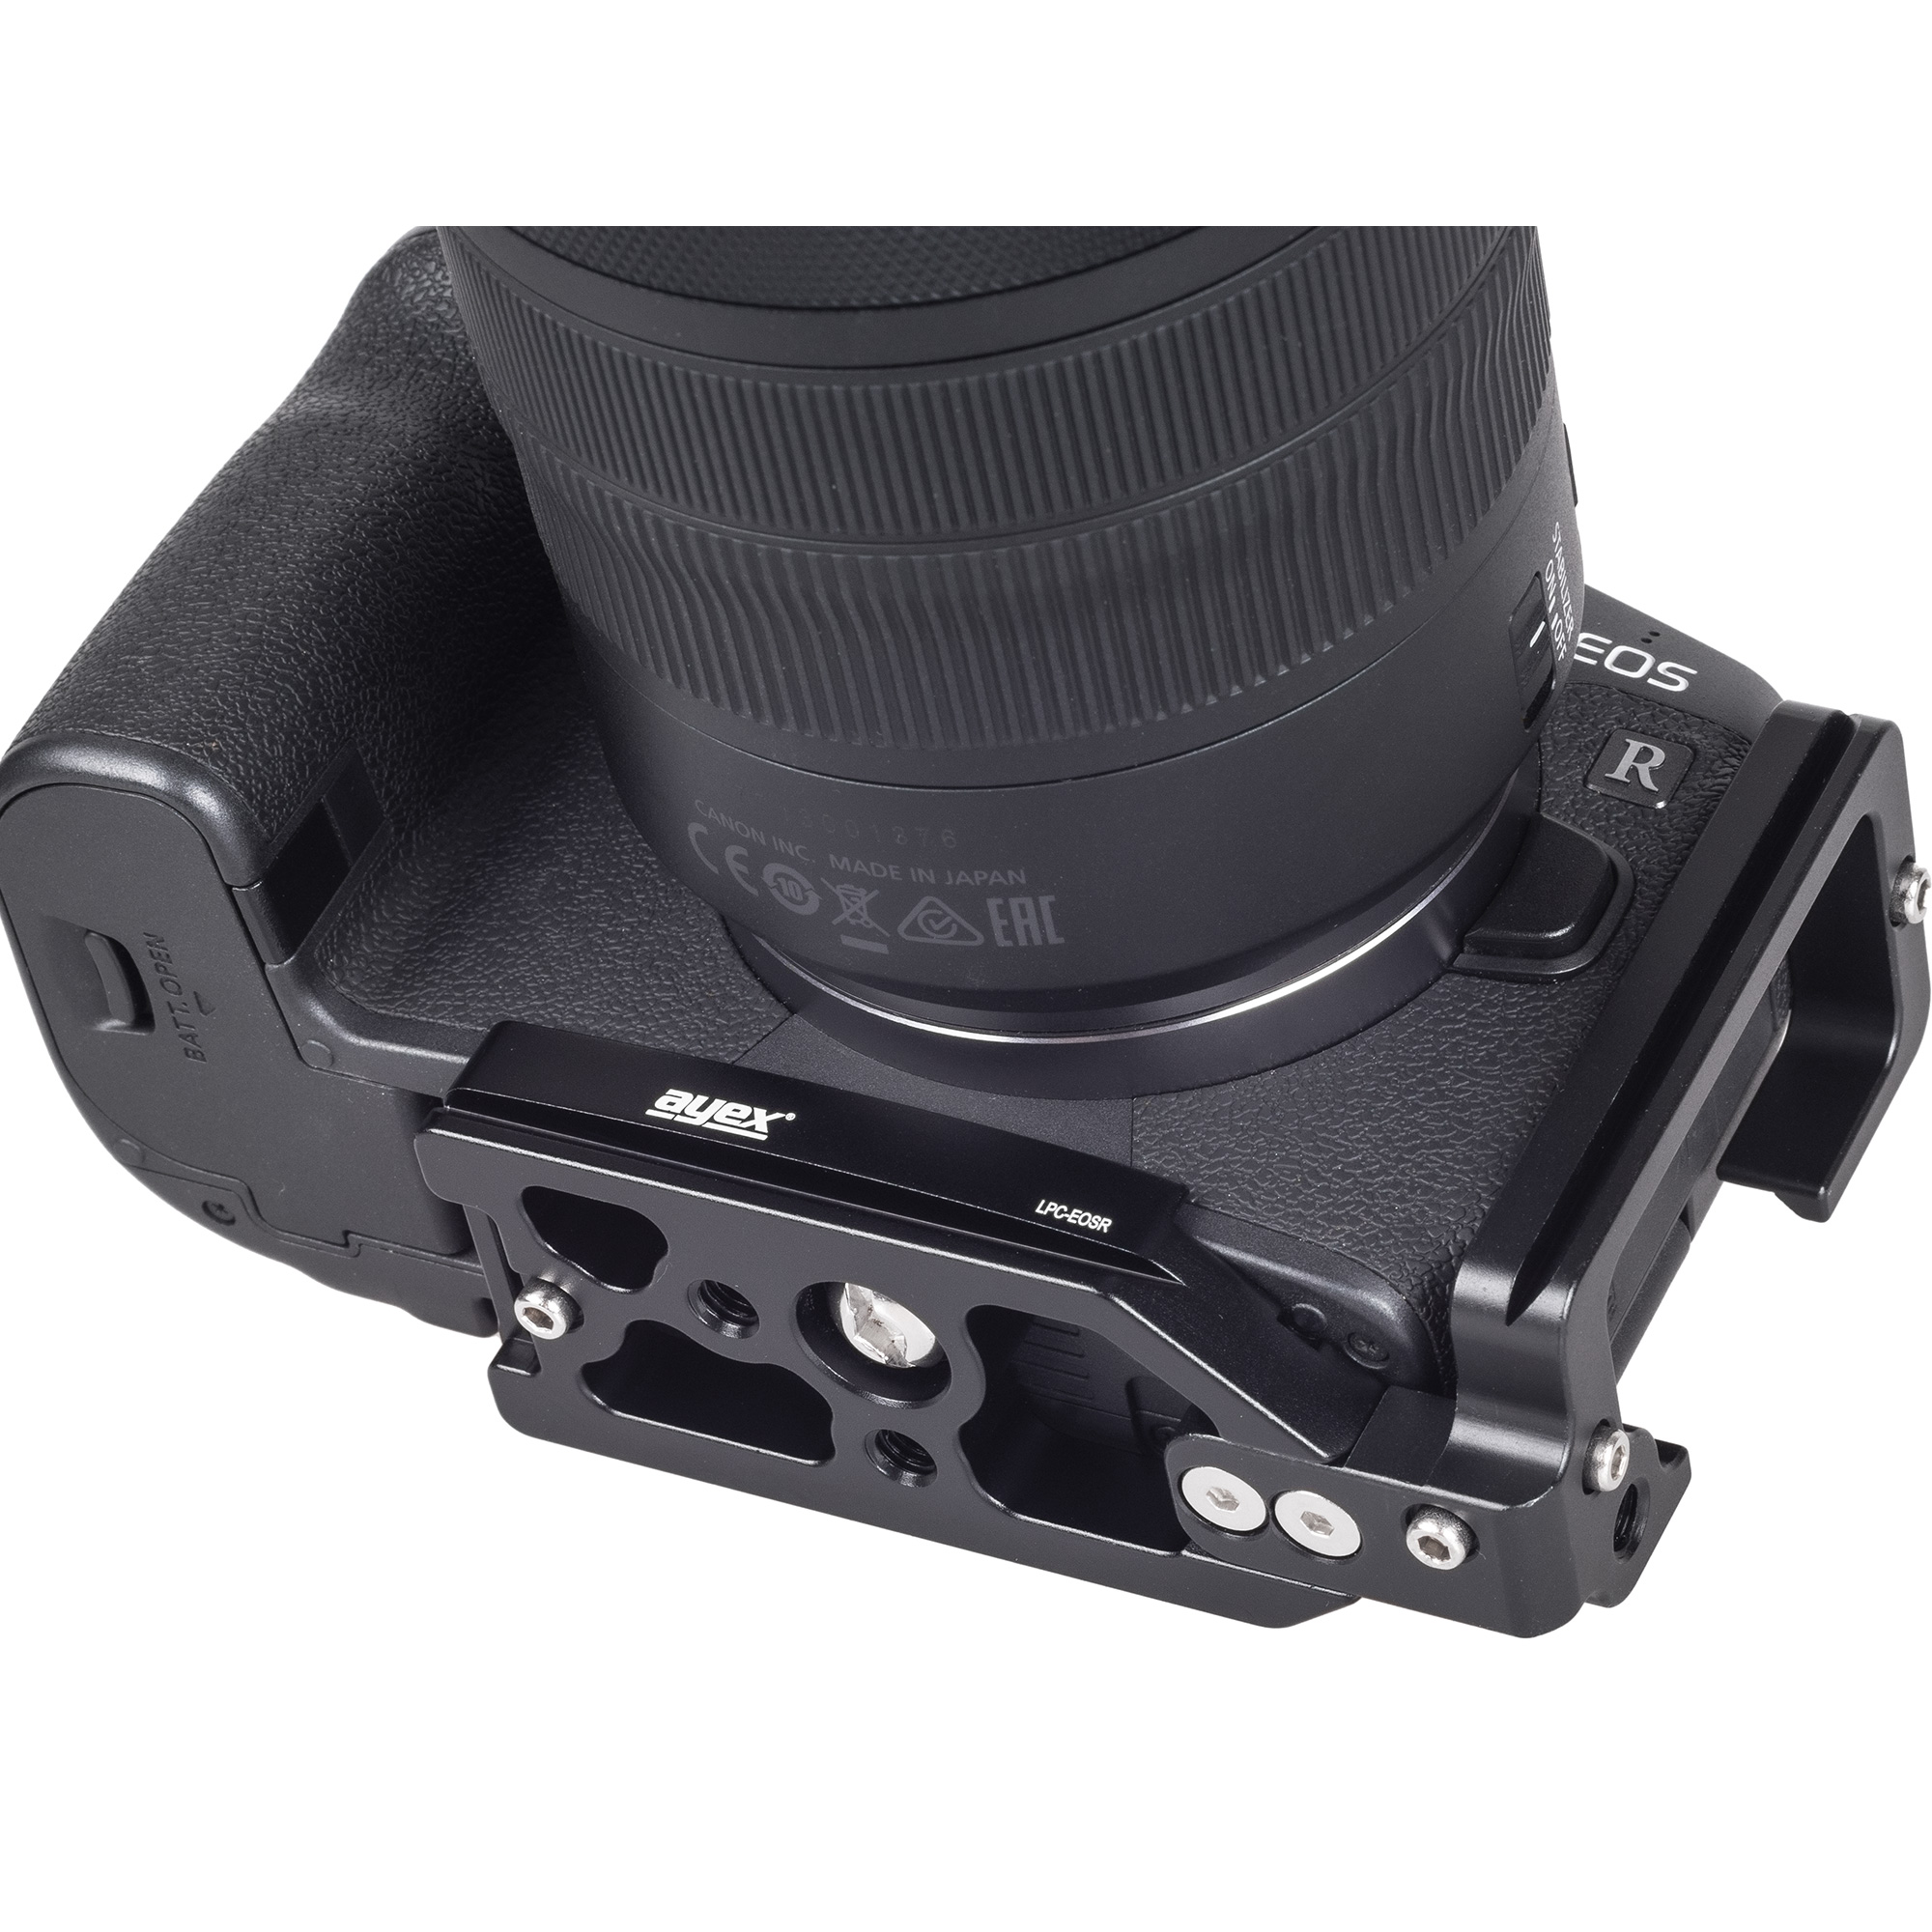 Kamerahalterung Schnellwechselplatte für Canon EOS R und Arca-Swiss Standard, ayex LPC-EOSR